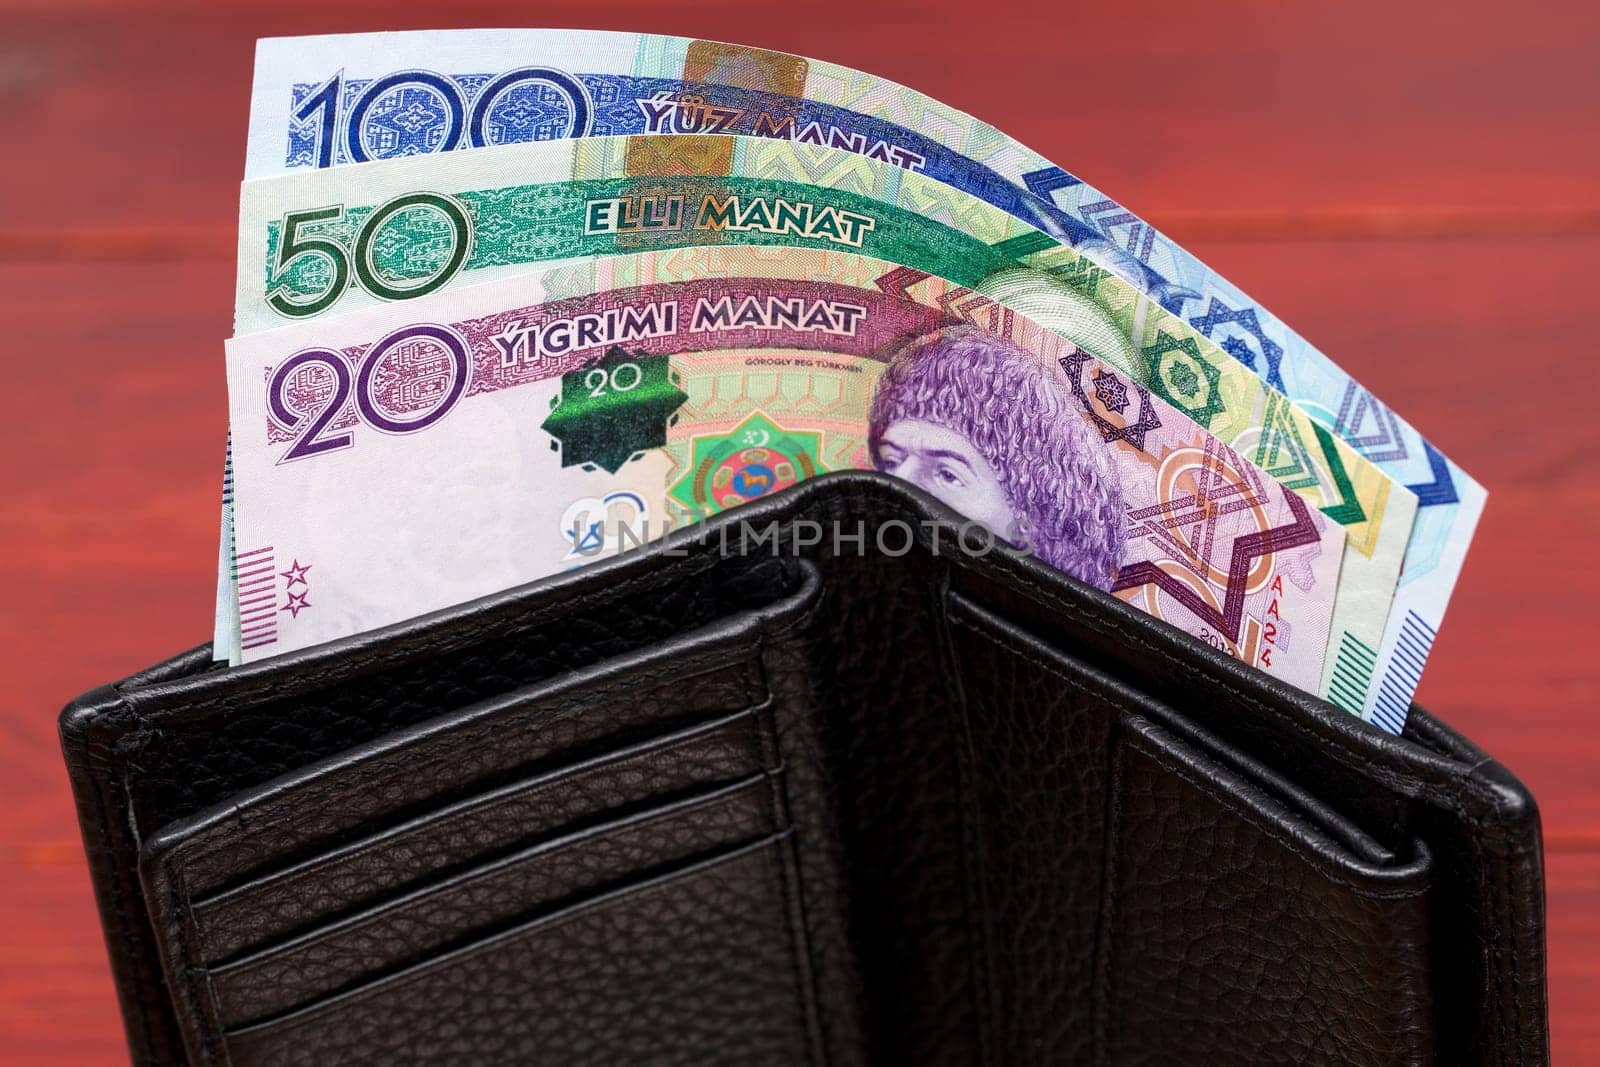 Turkmenistani money - manat in the wallet